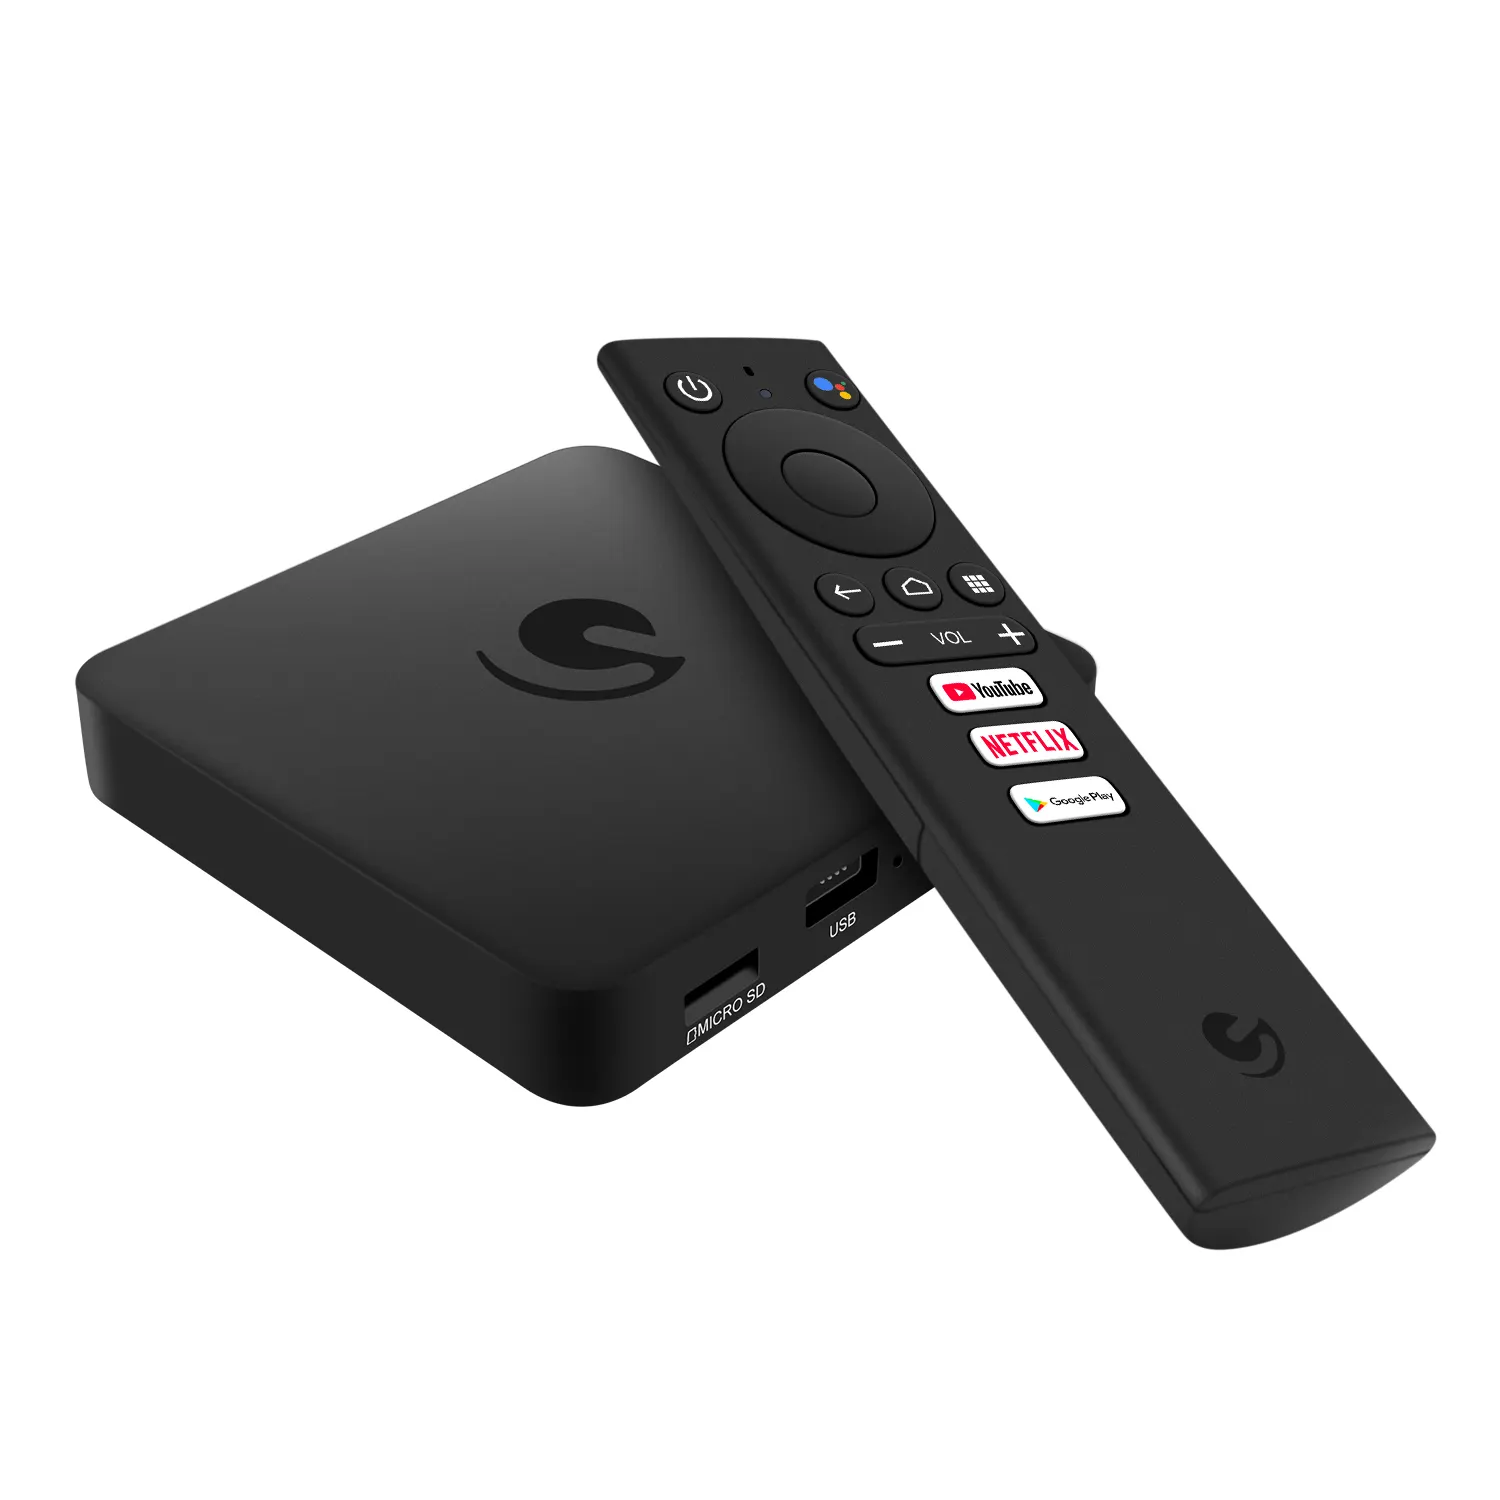 Boîtier TV 4K, Ultra HD, Android, avec Chromecast intégré + Netflix, modèle: AGT419